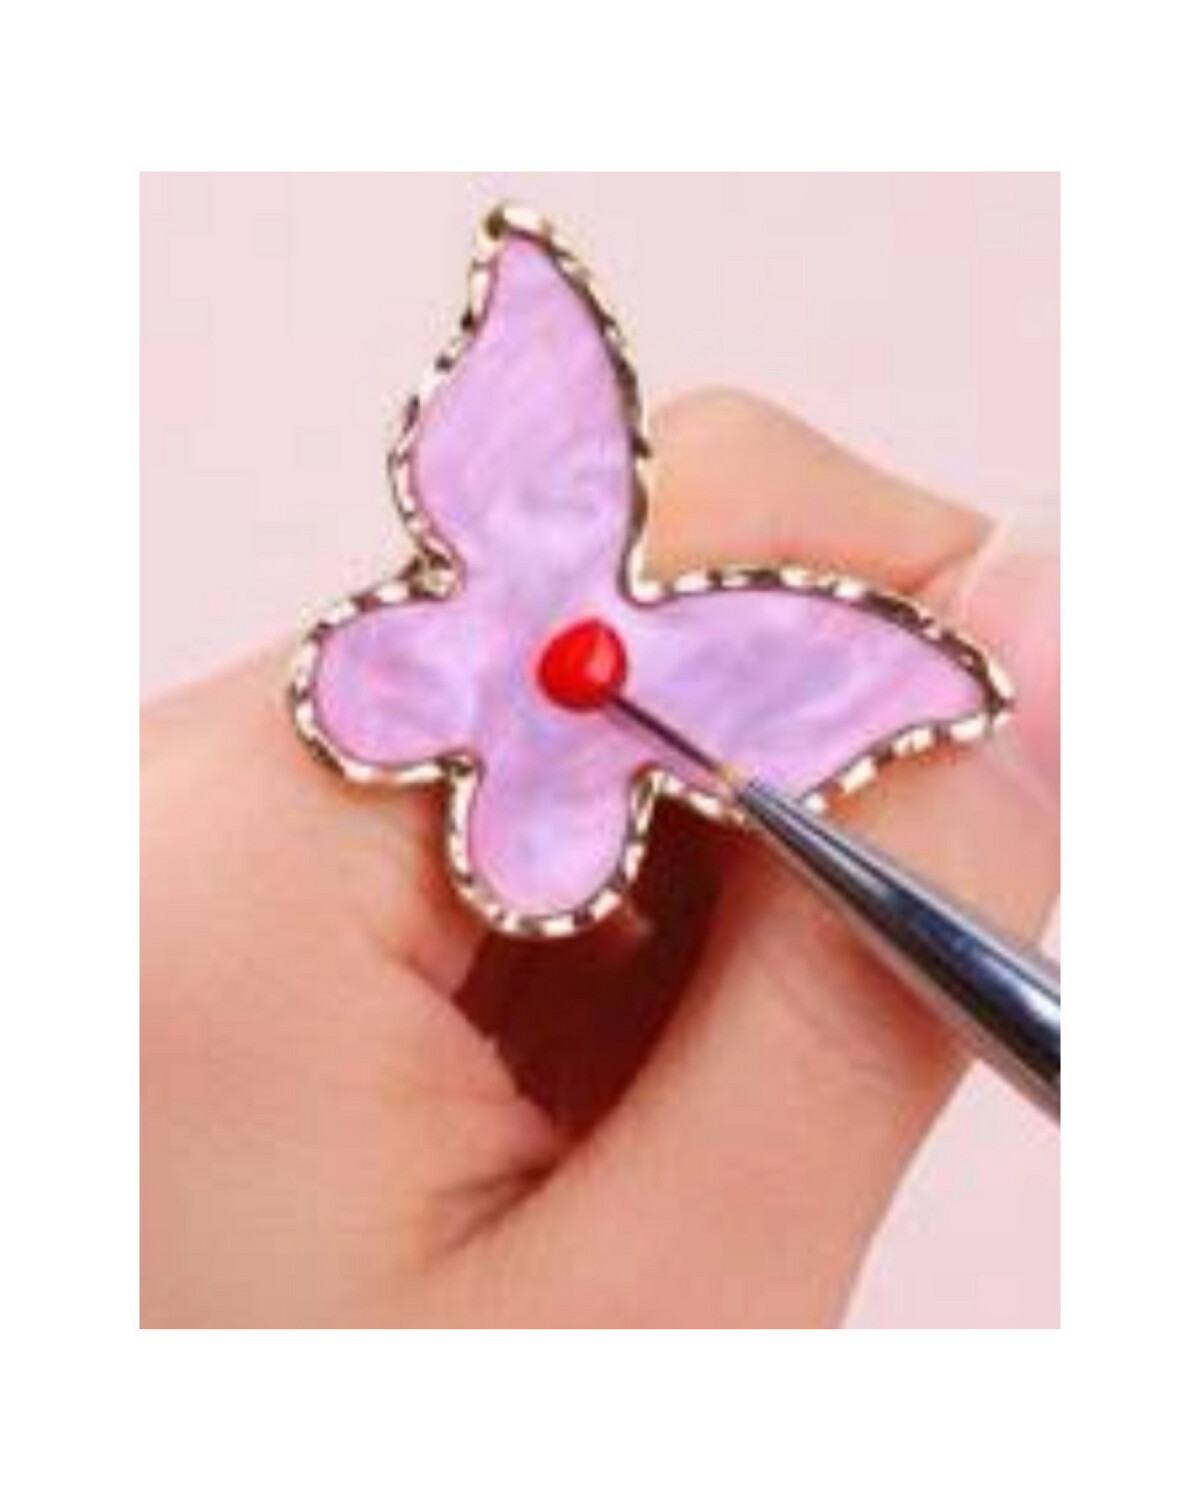 Bague papillon pour nails art 